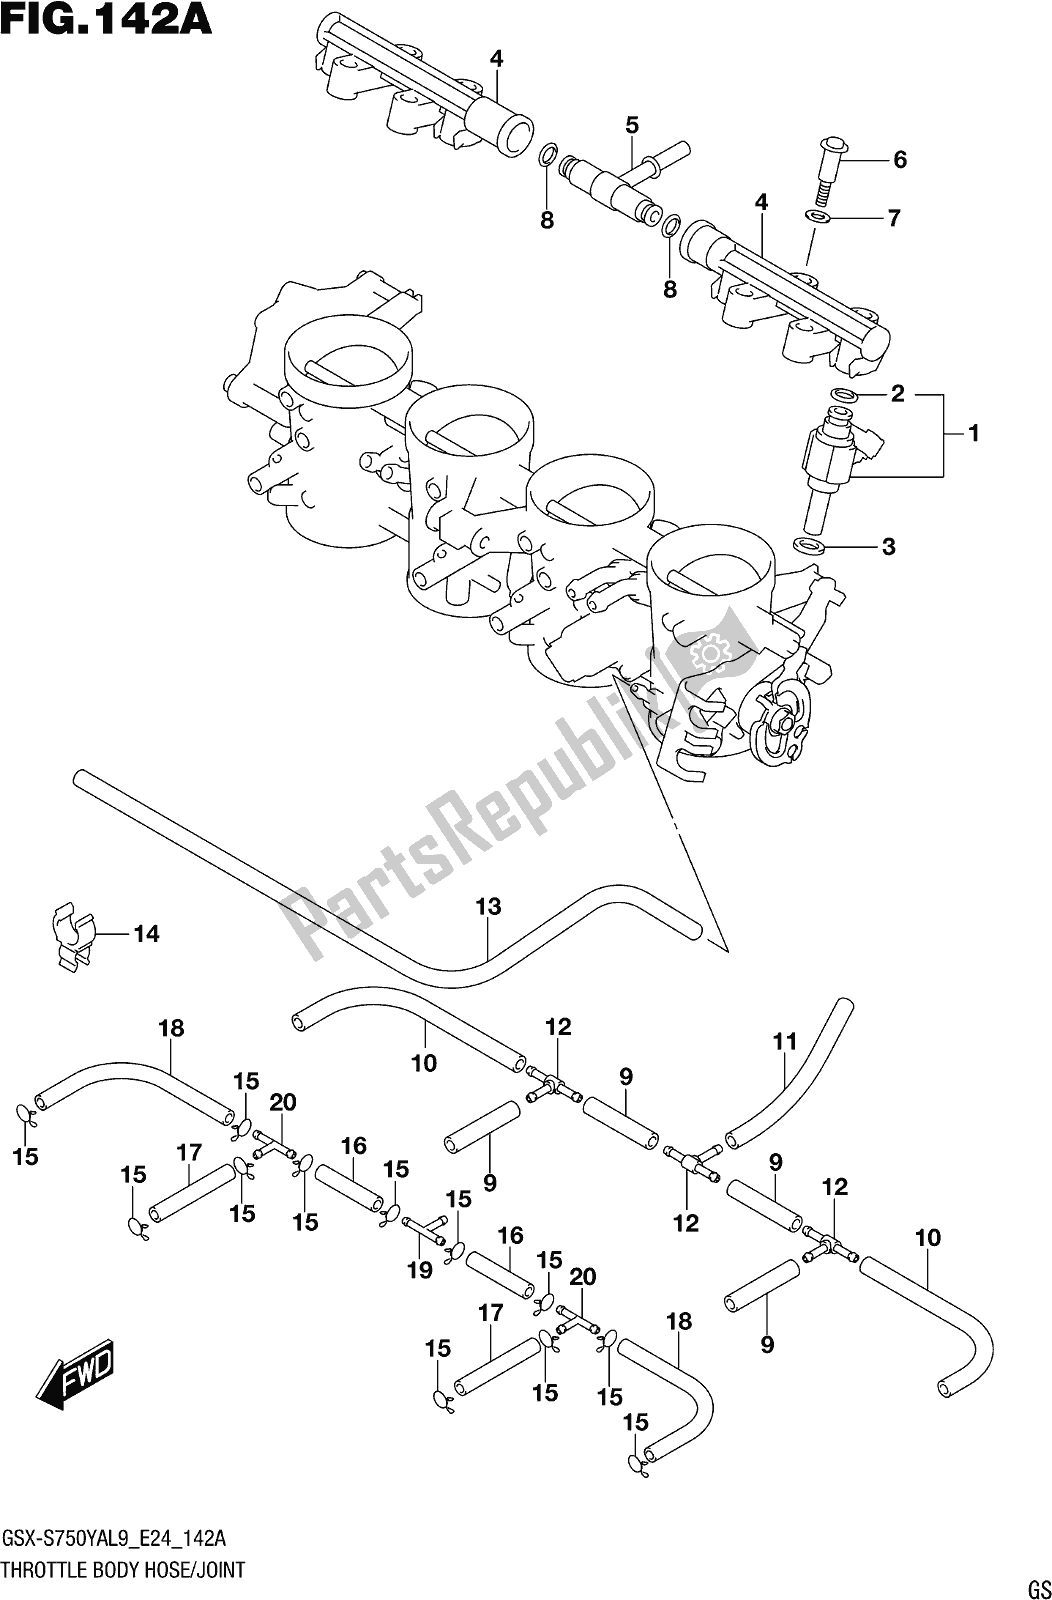 Alle onderdelen voor de Fig. 142a Throttle Body Hose/joint van de Suzuki Gsx-s 750 YA 2019